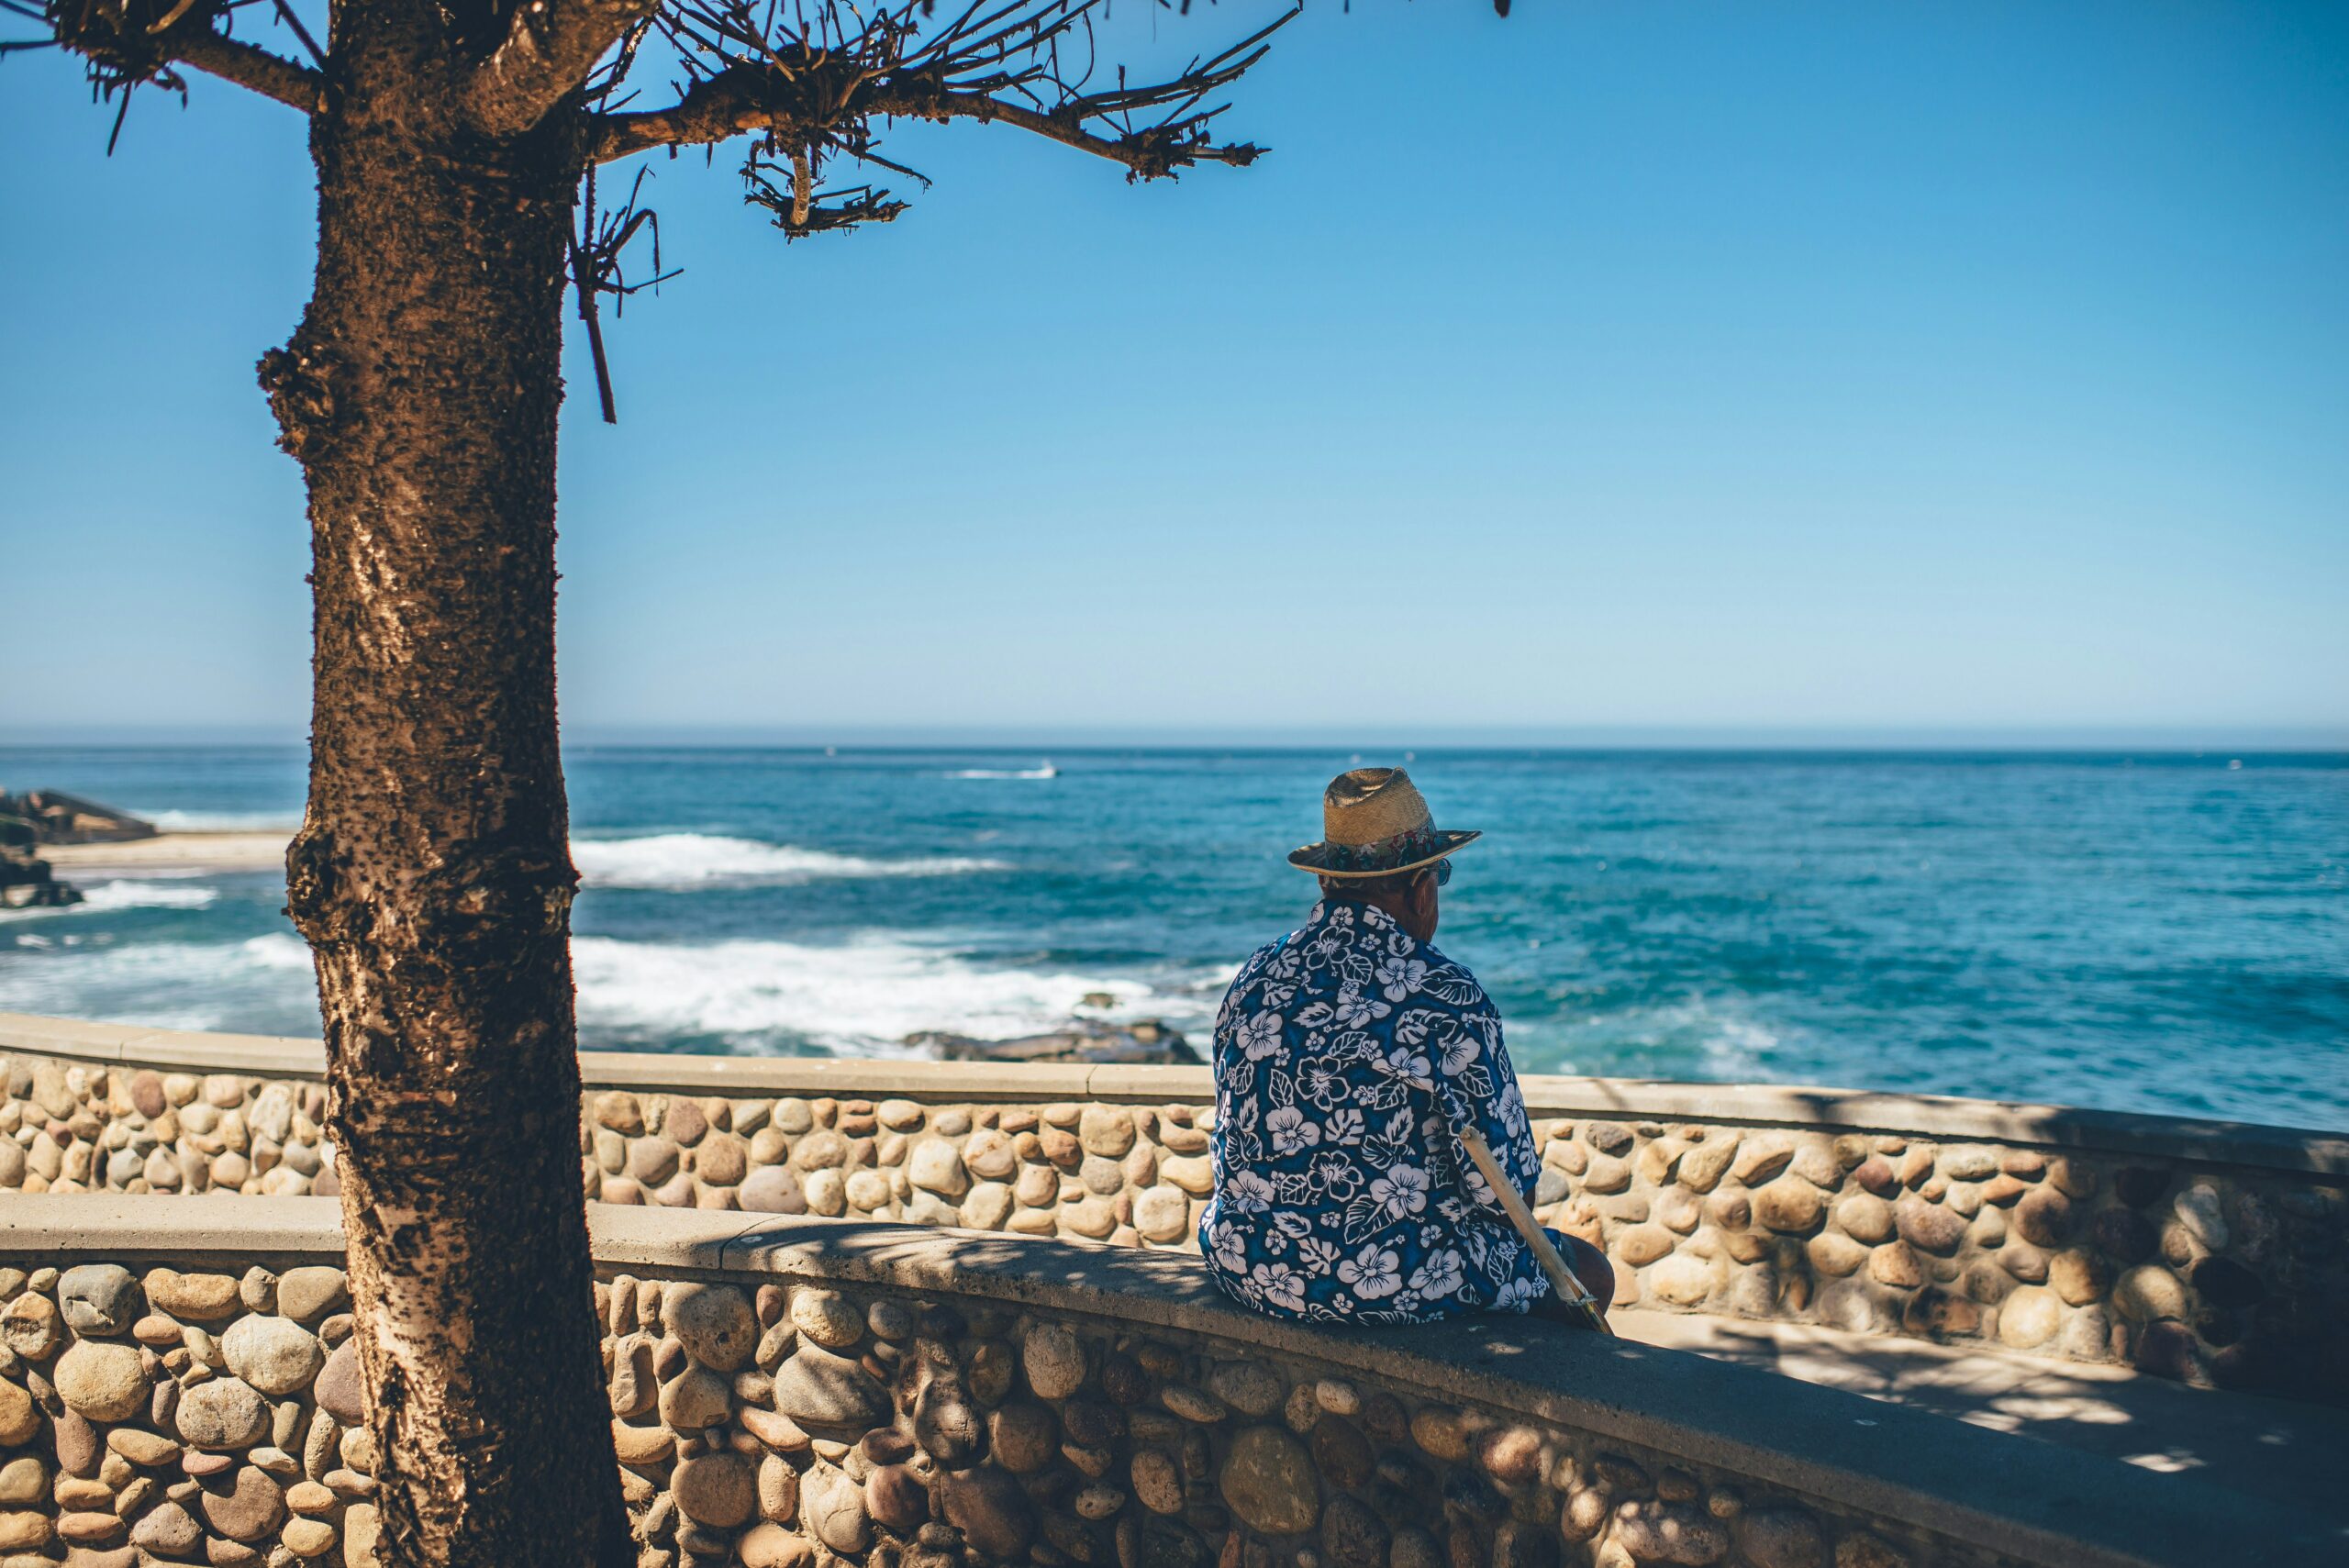 A man in an Aloha shirt sits beside the ocean